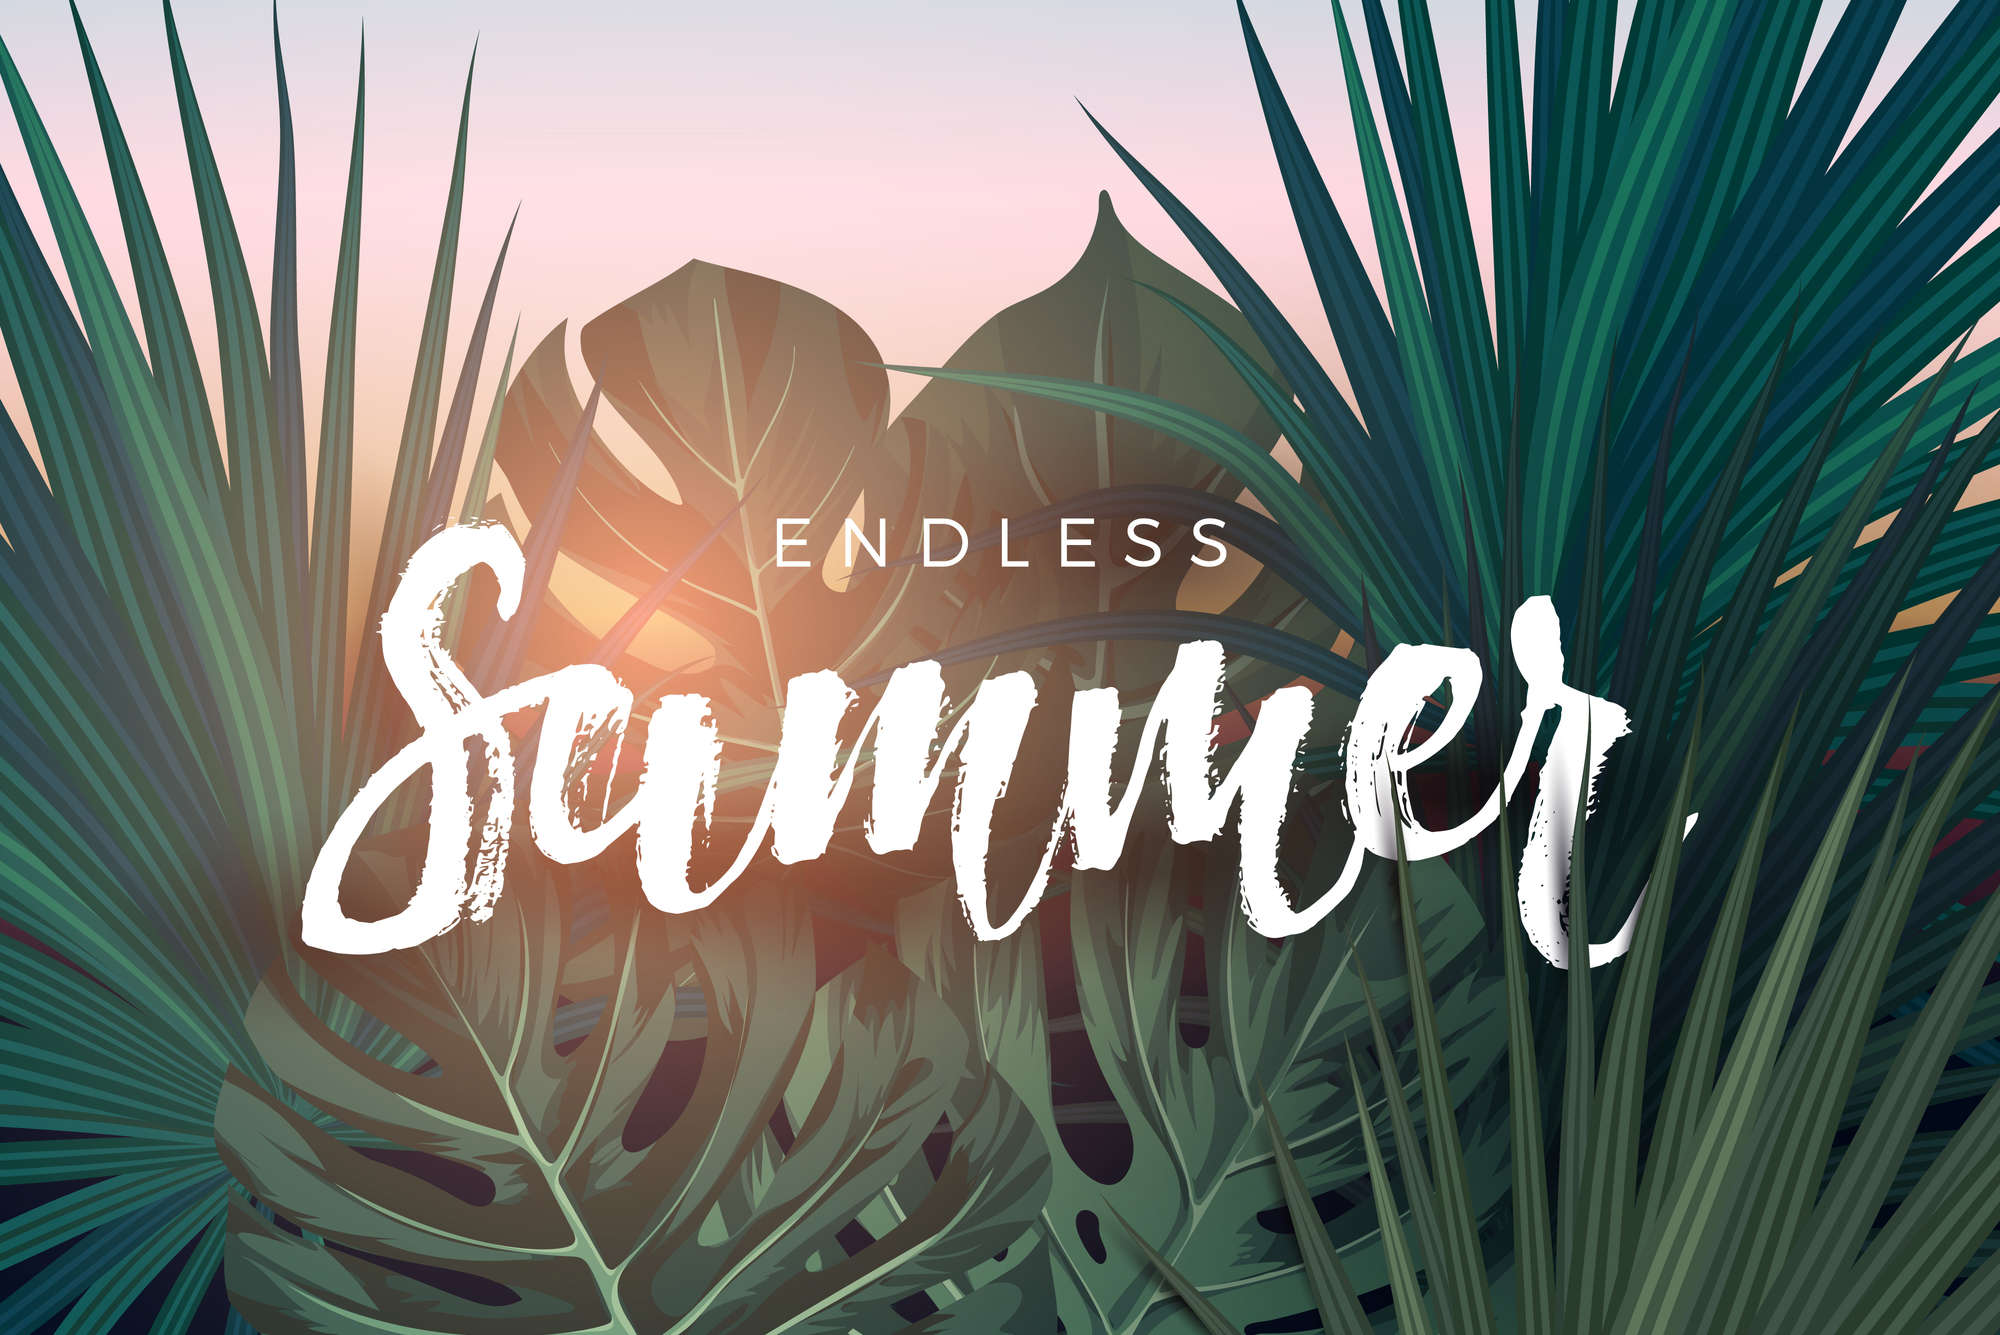             Papel pintado gráfico "Endless Summer" sobre vellón liso nacarado
        